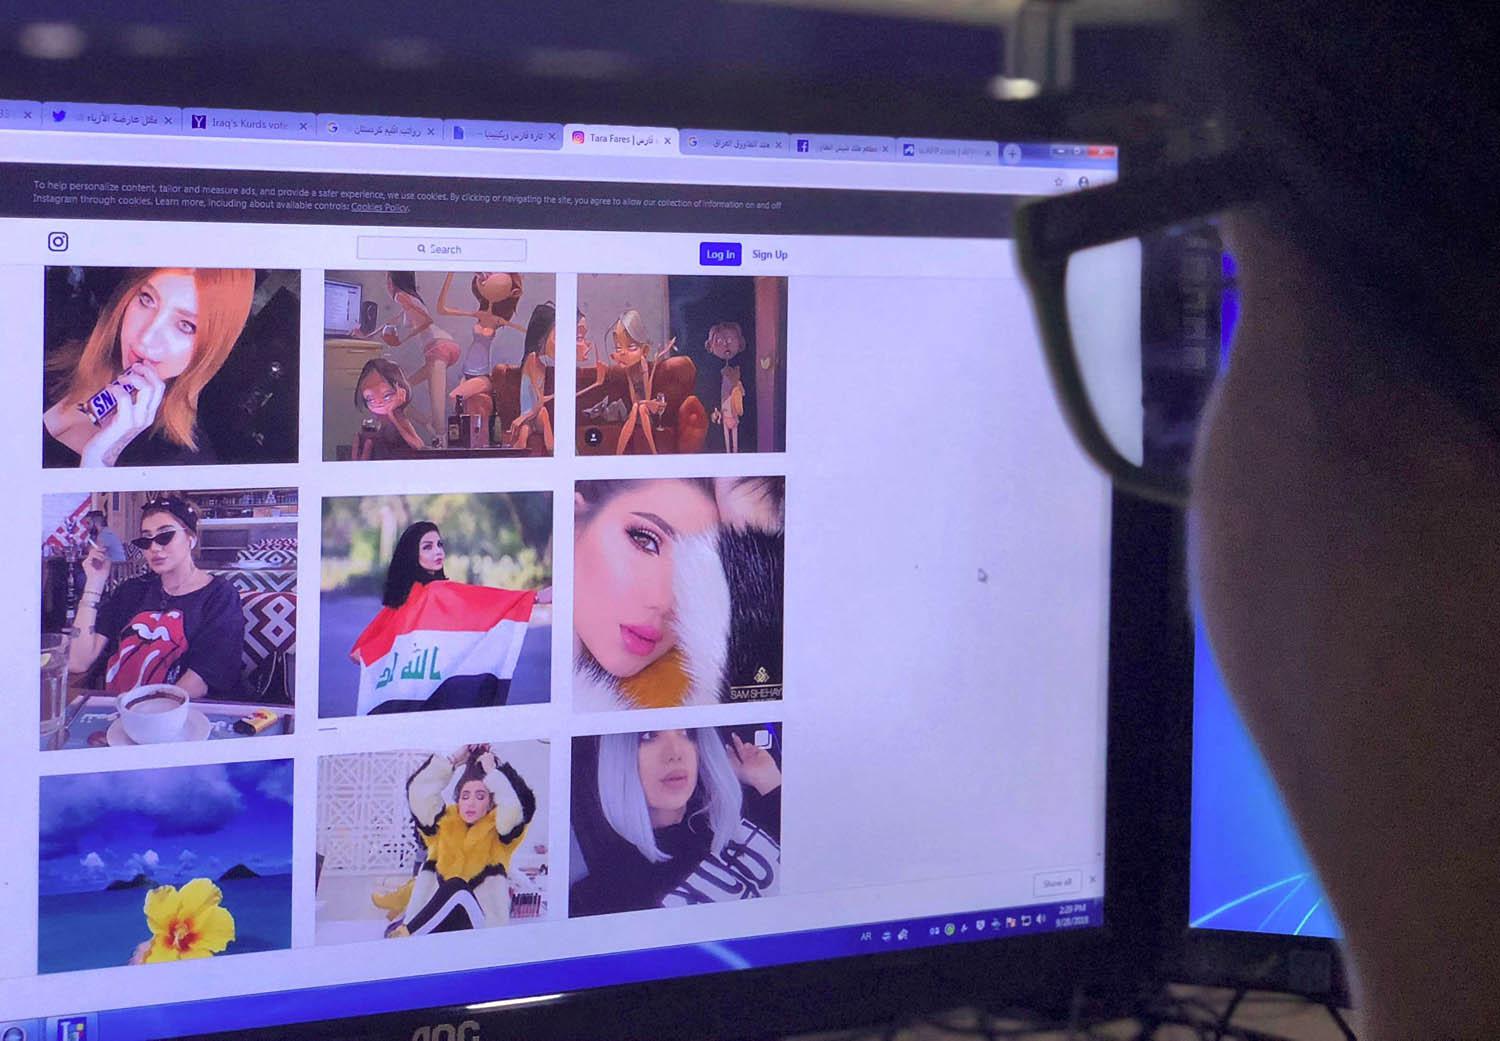 ناشطة عراقية تتصفح موقع تارة فارس على انستغرام